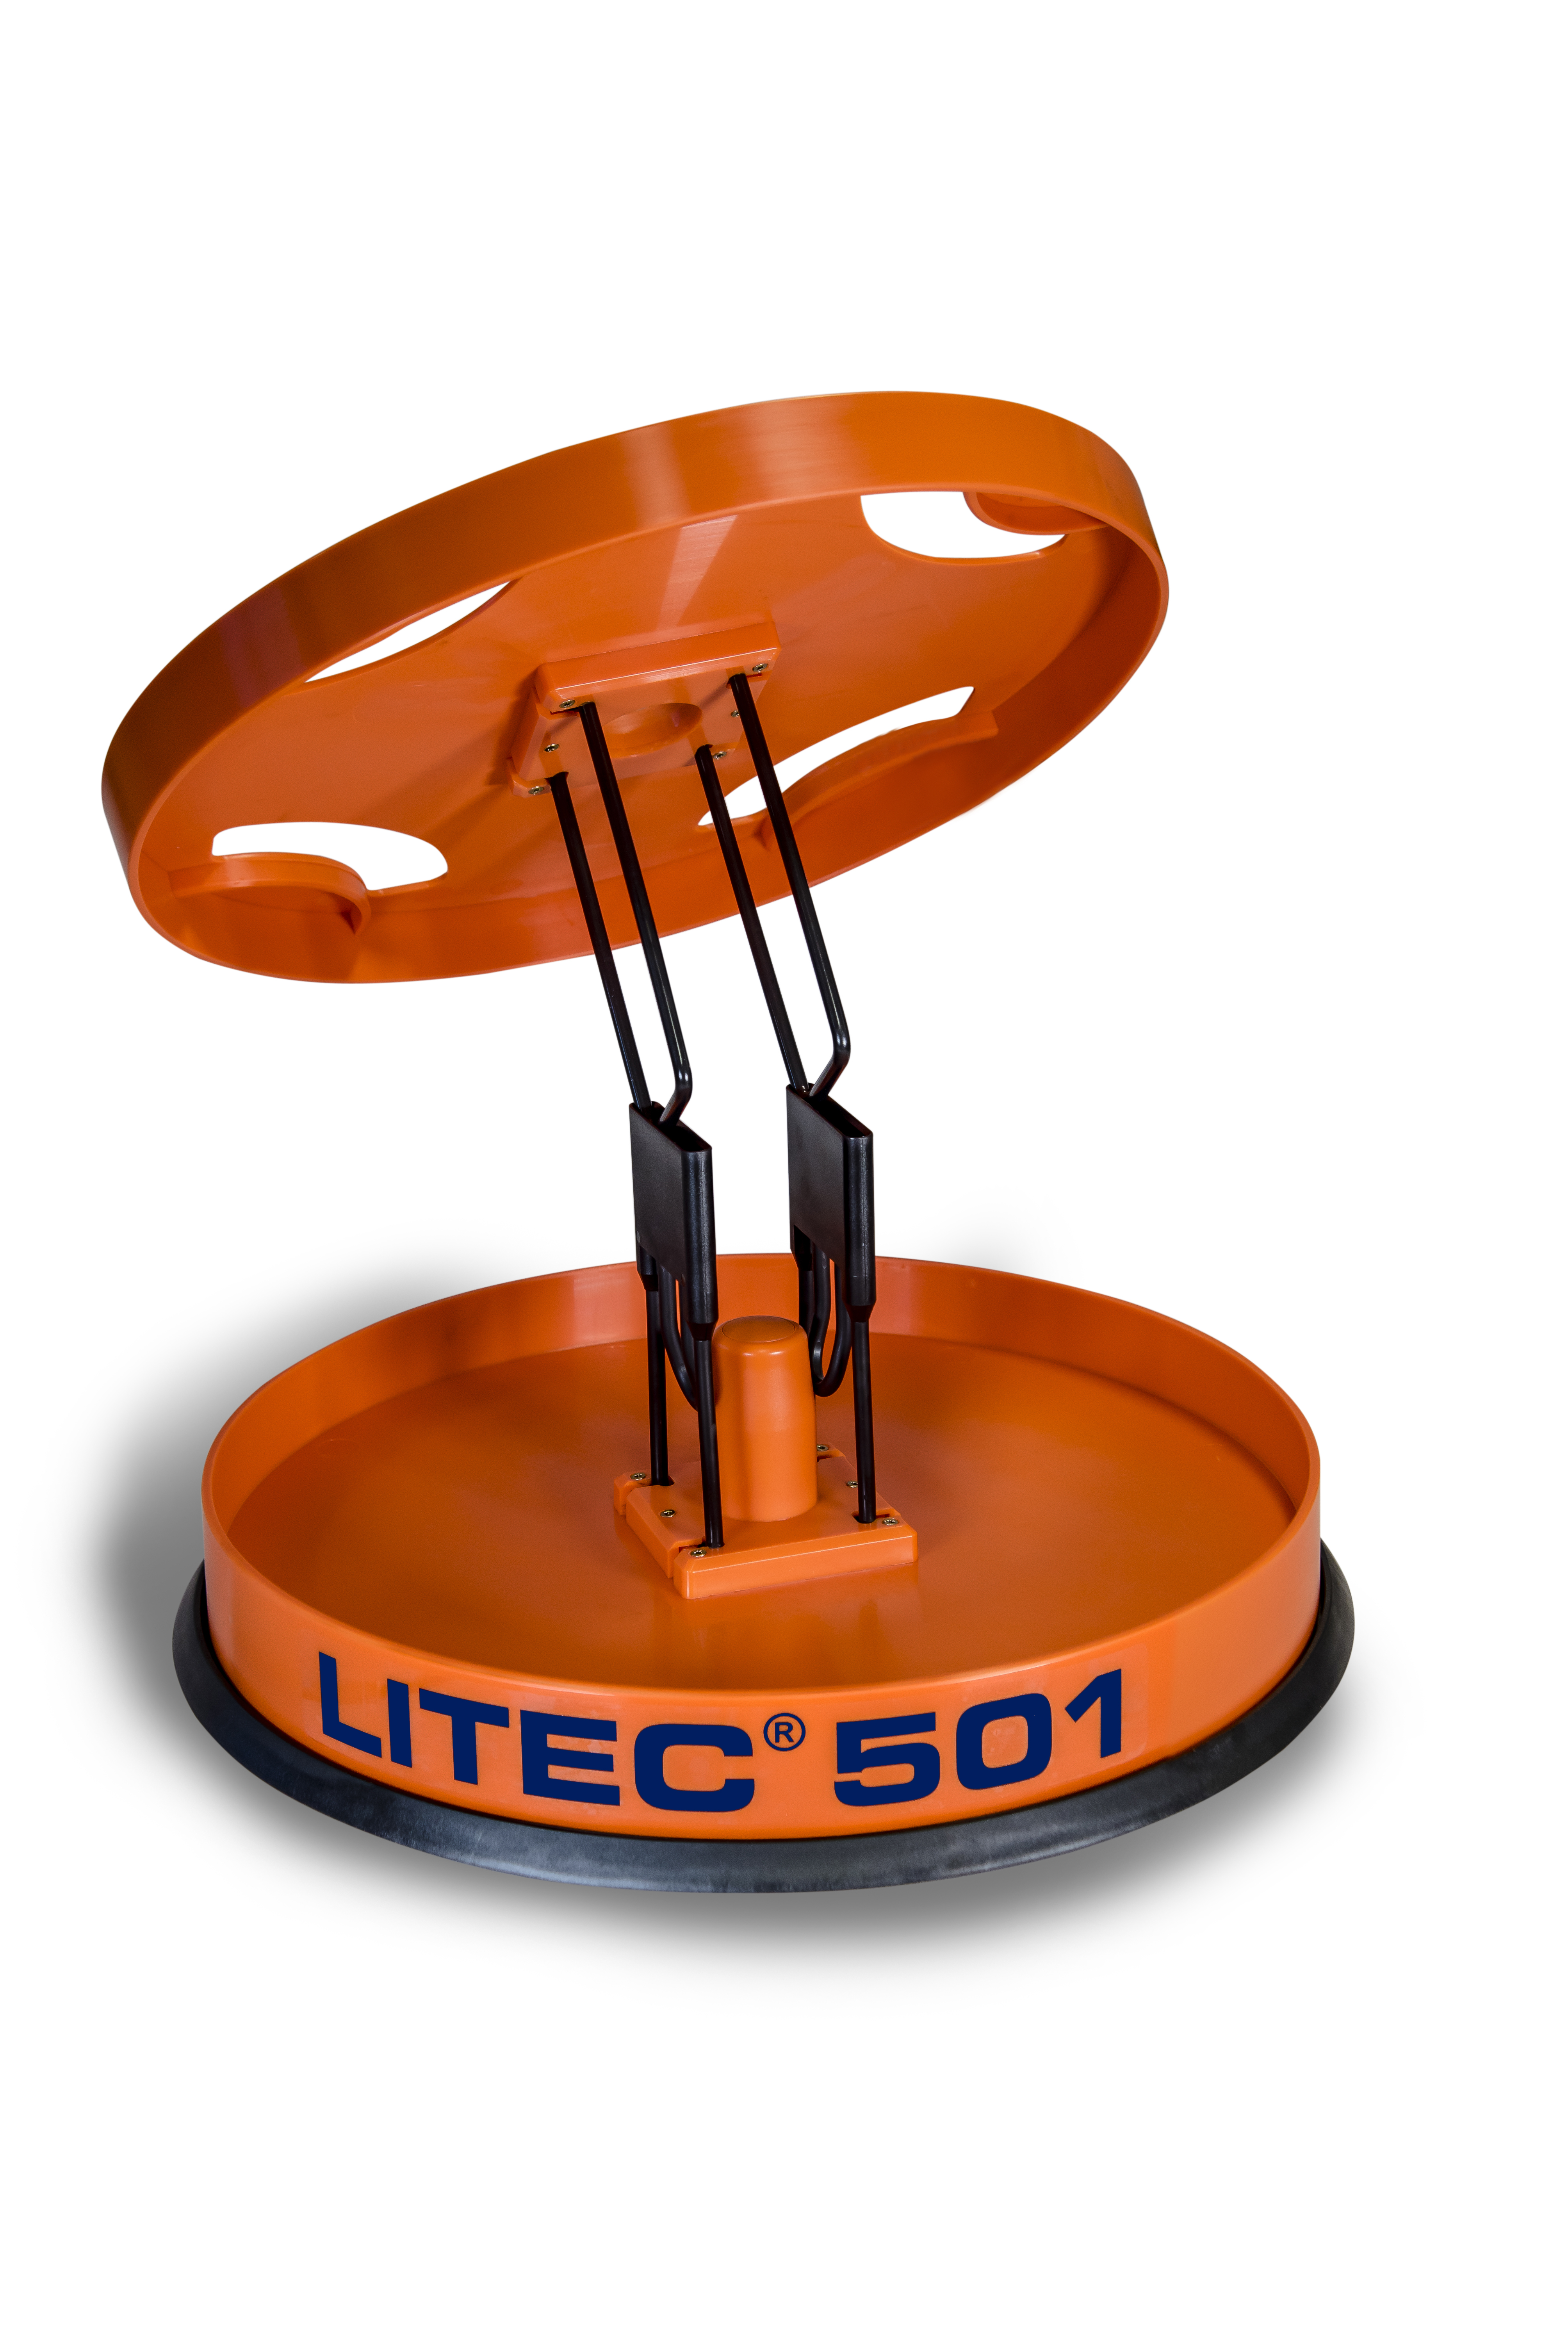 LITEC 501